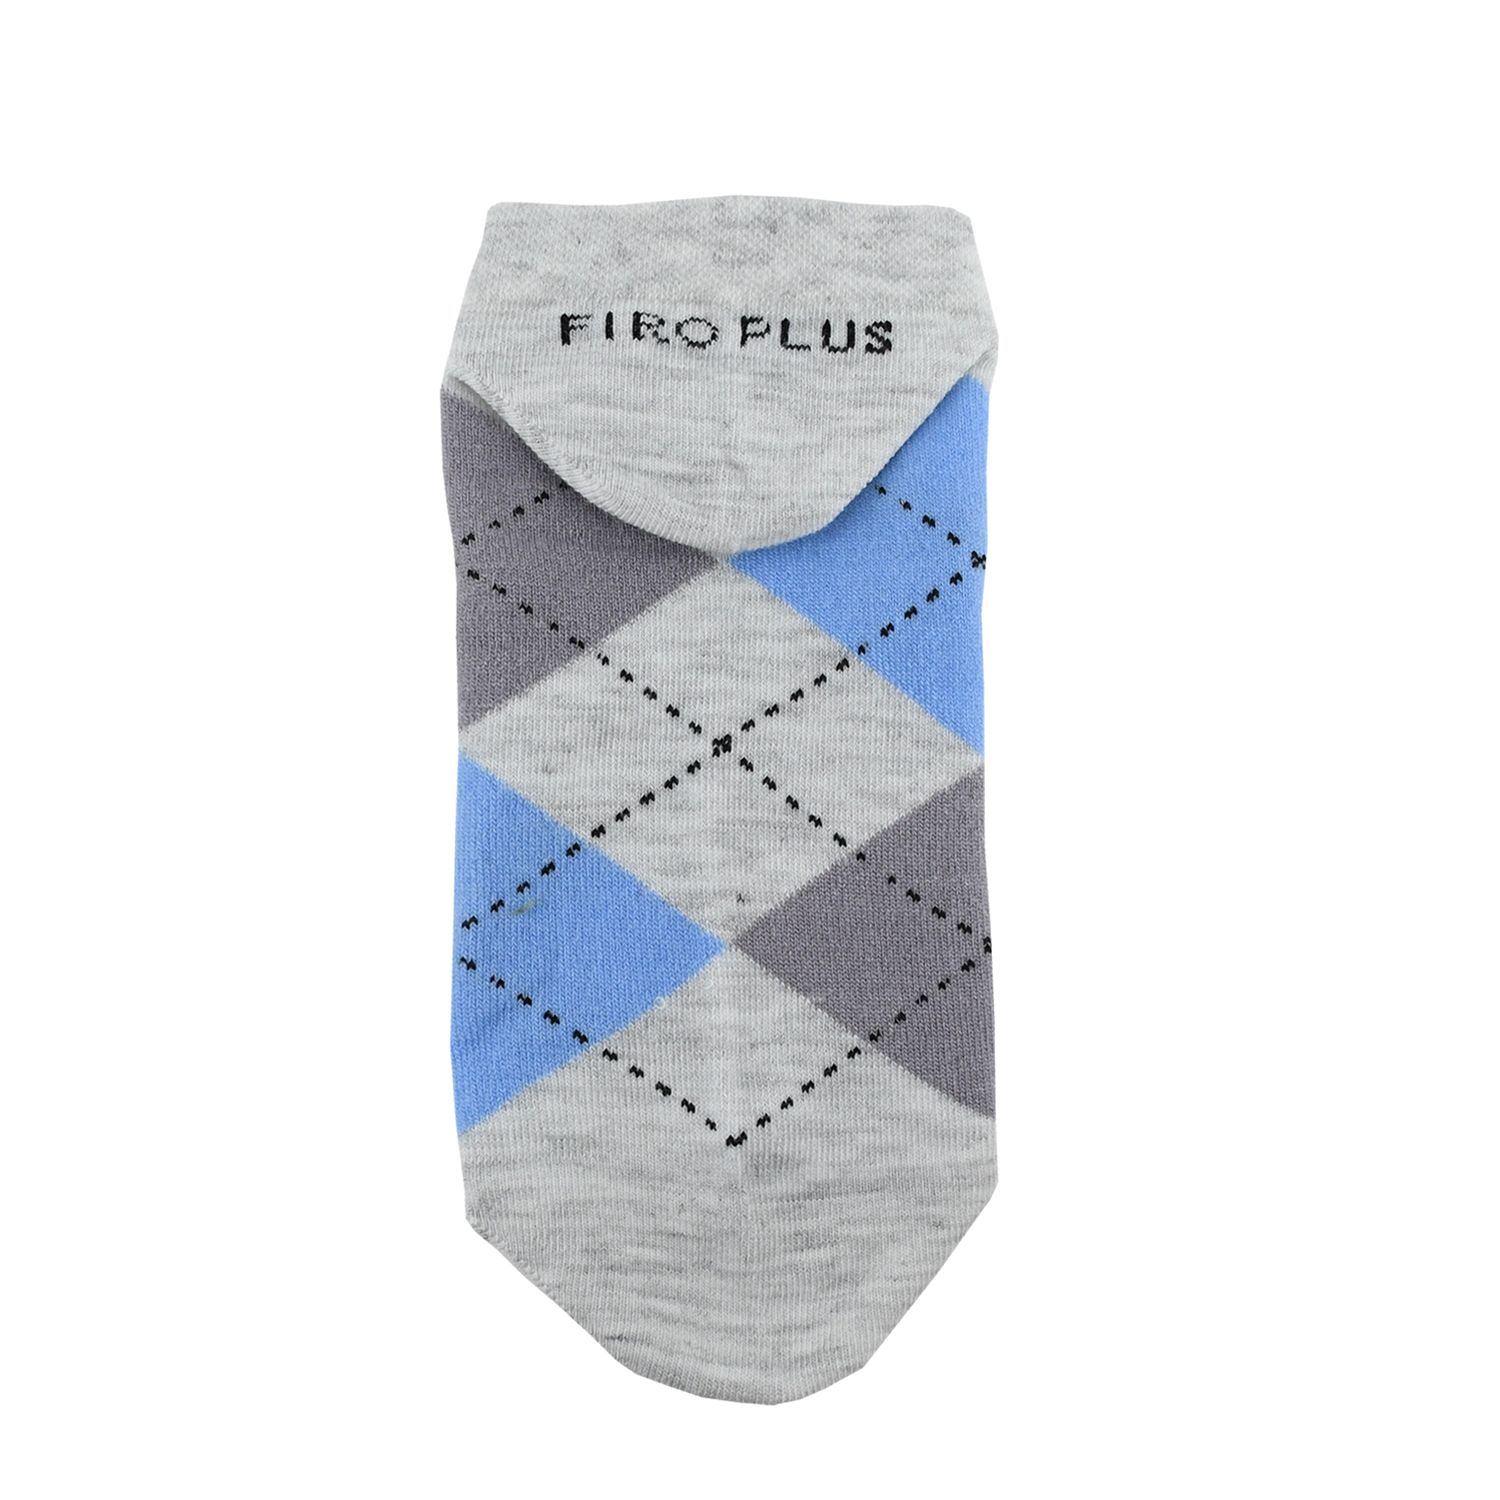 جوراب مردانه فیرو پلاس کد FT3102 مجموعه 3 عددی -  - 5